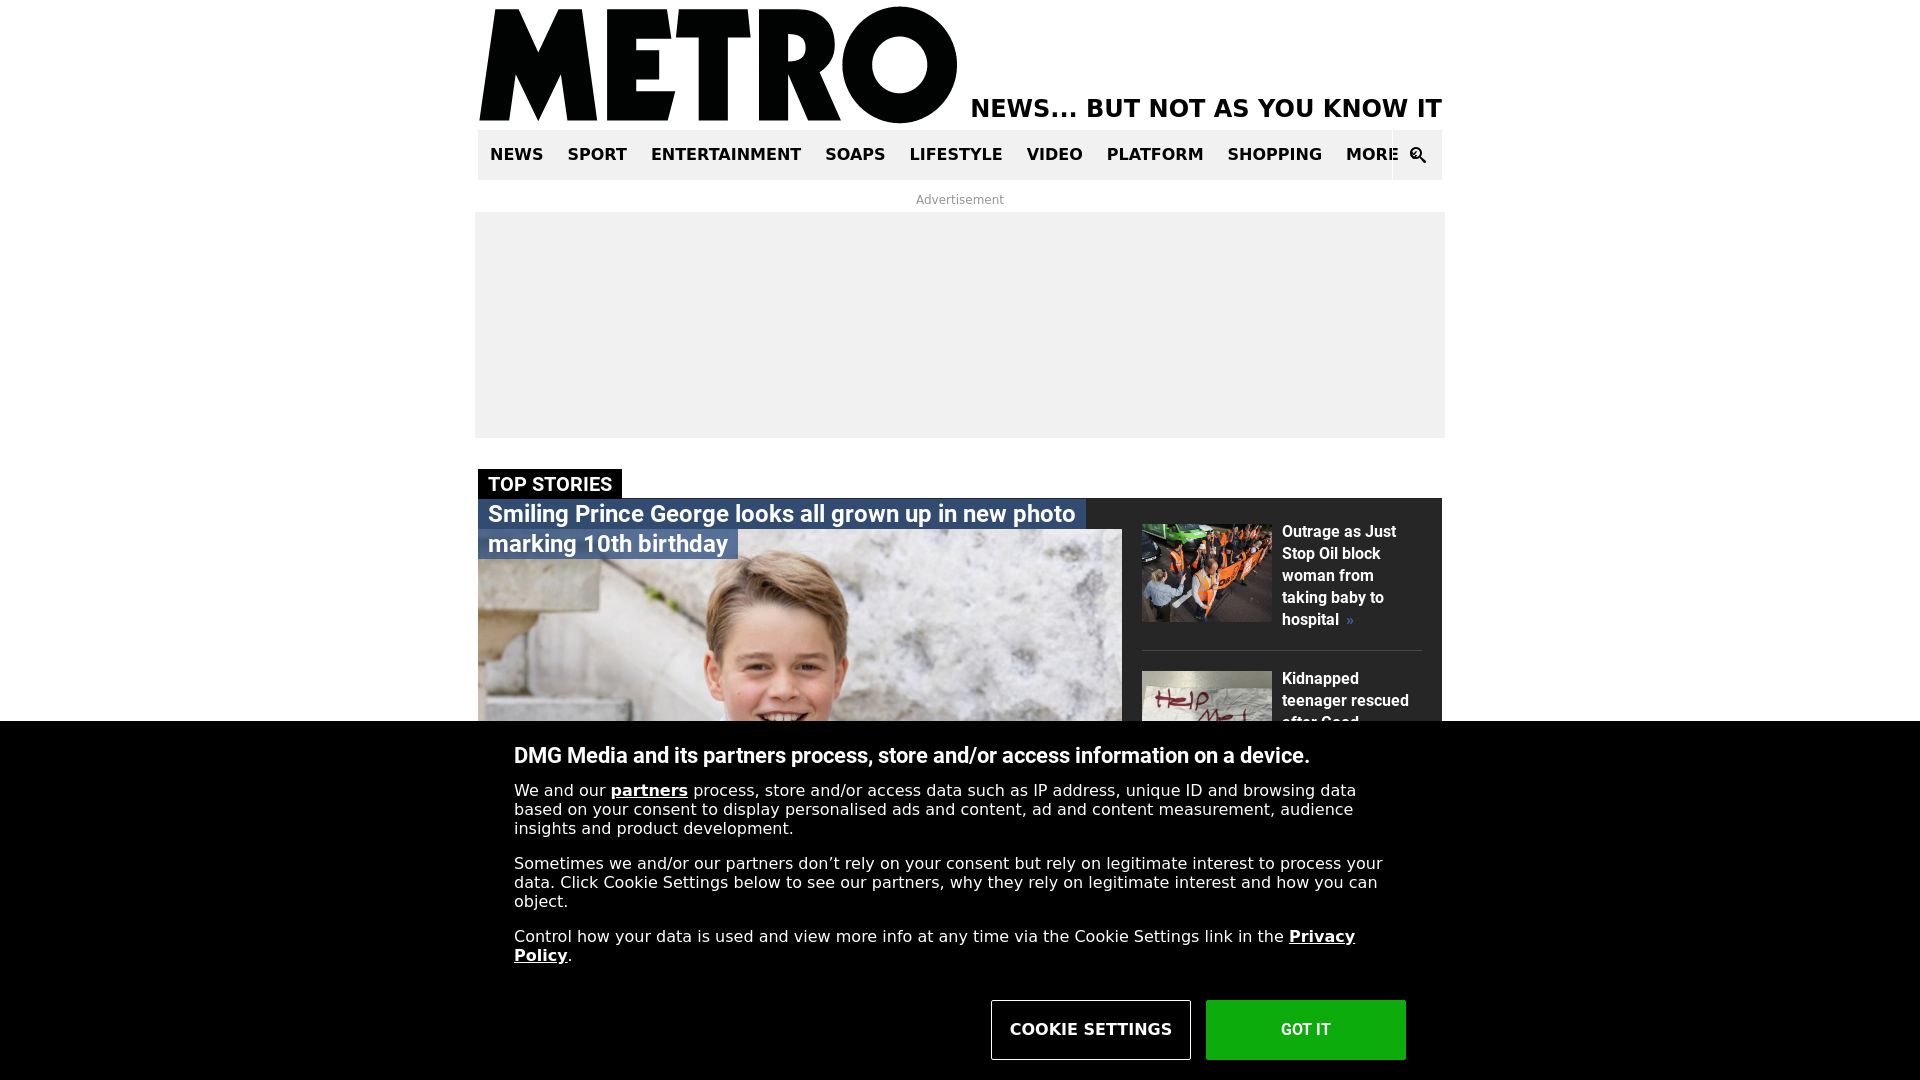 Stato del sito web metro.co.uk è   ONLINE